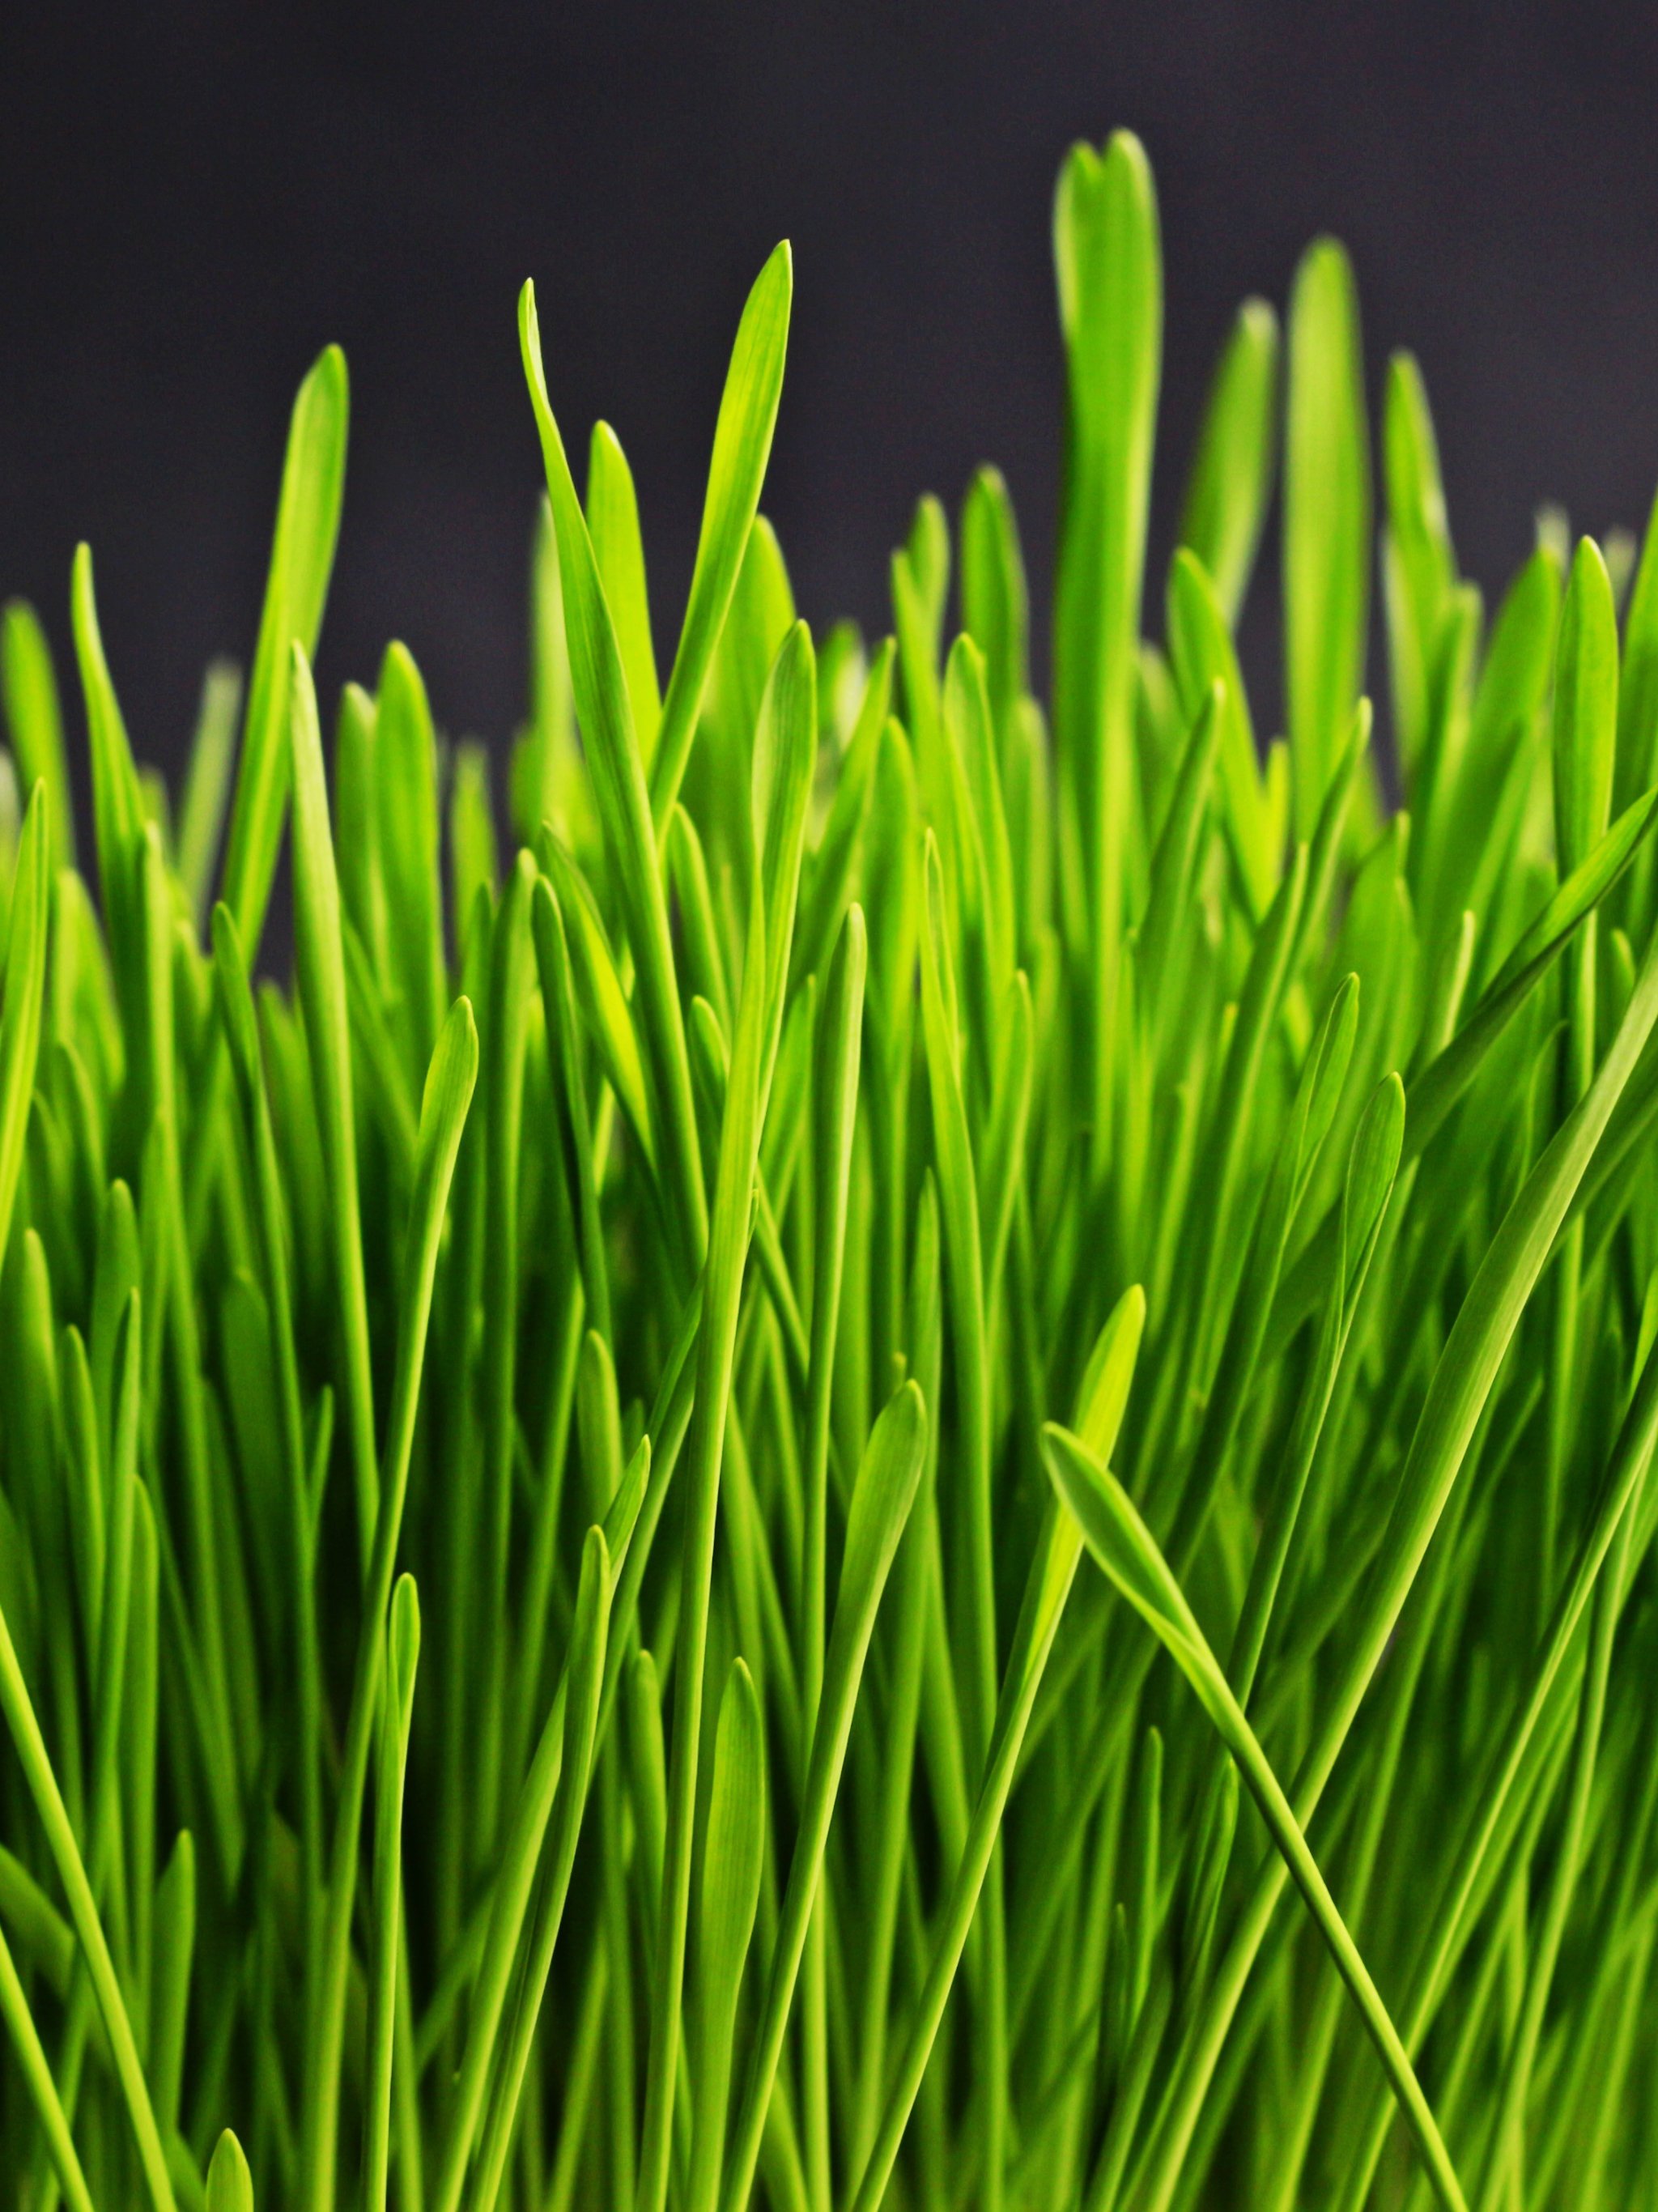 Chatterjee Wallpaper Natural Green Artificial Grass Carpet